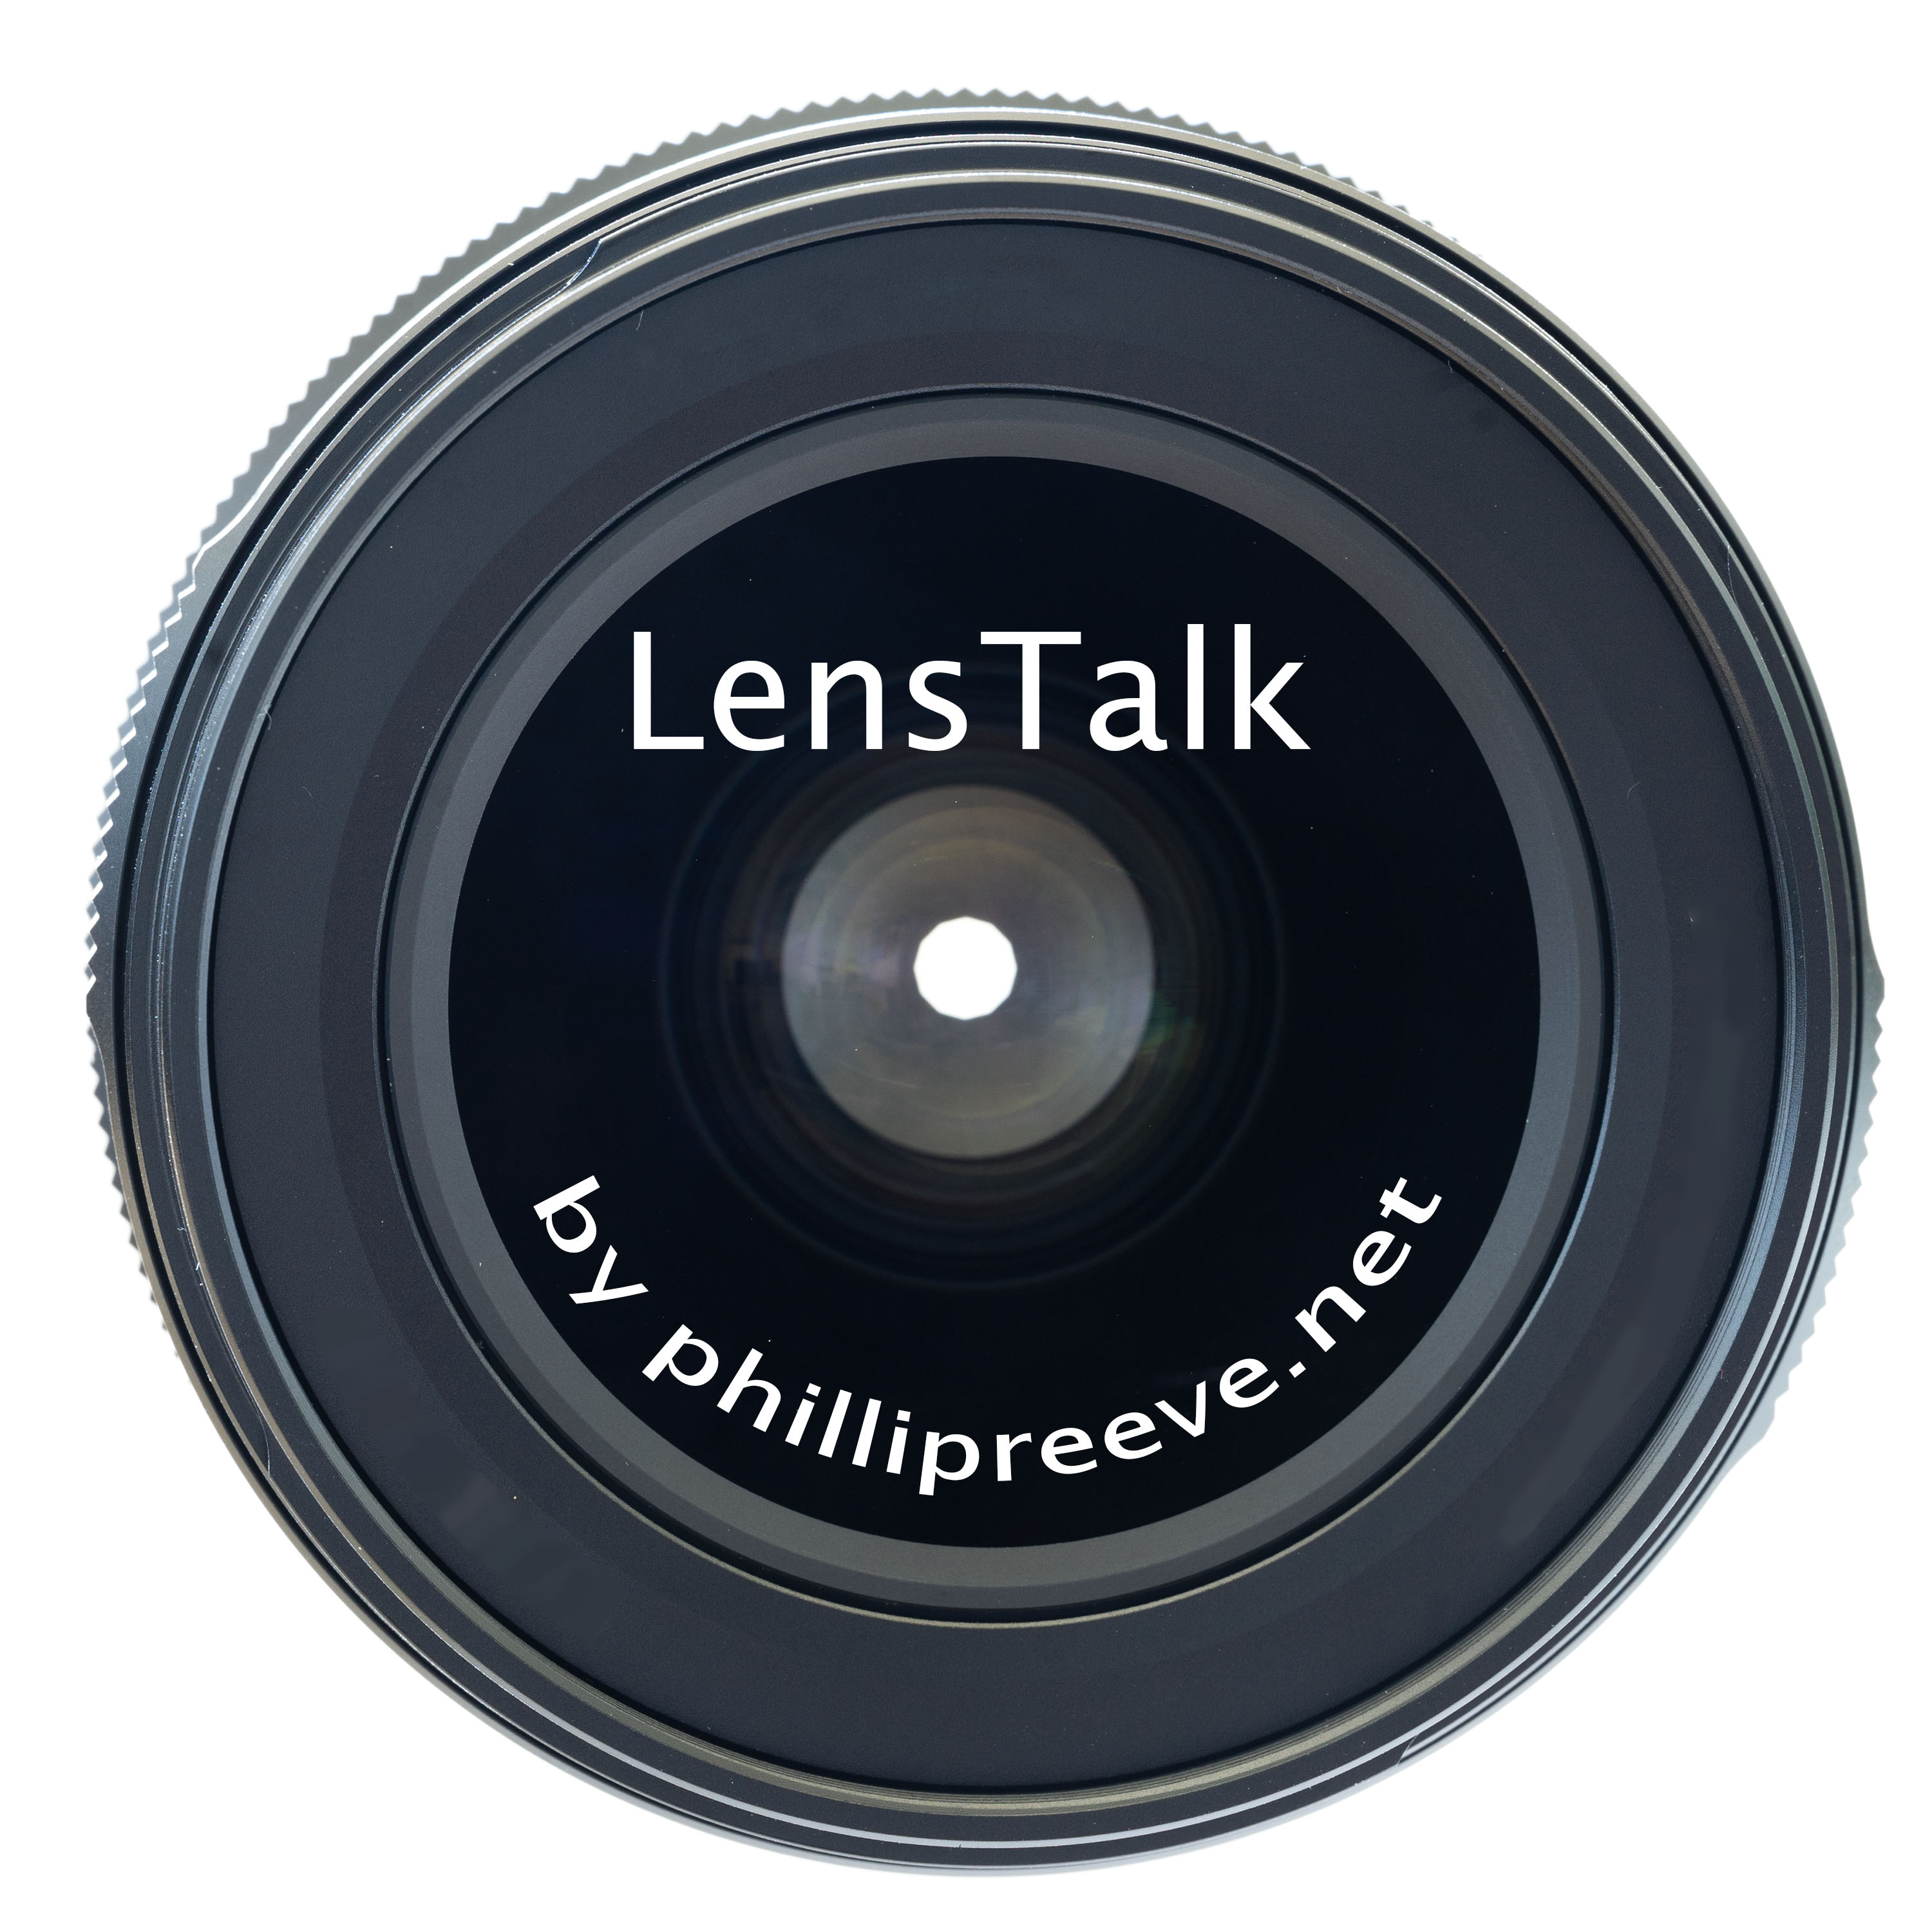 LensTalk